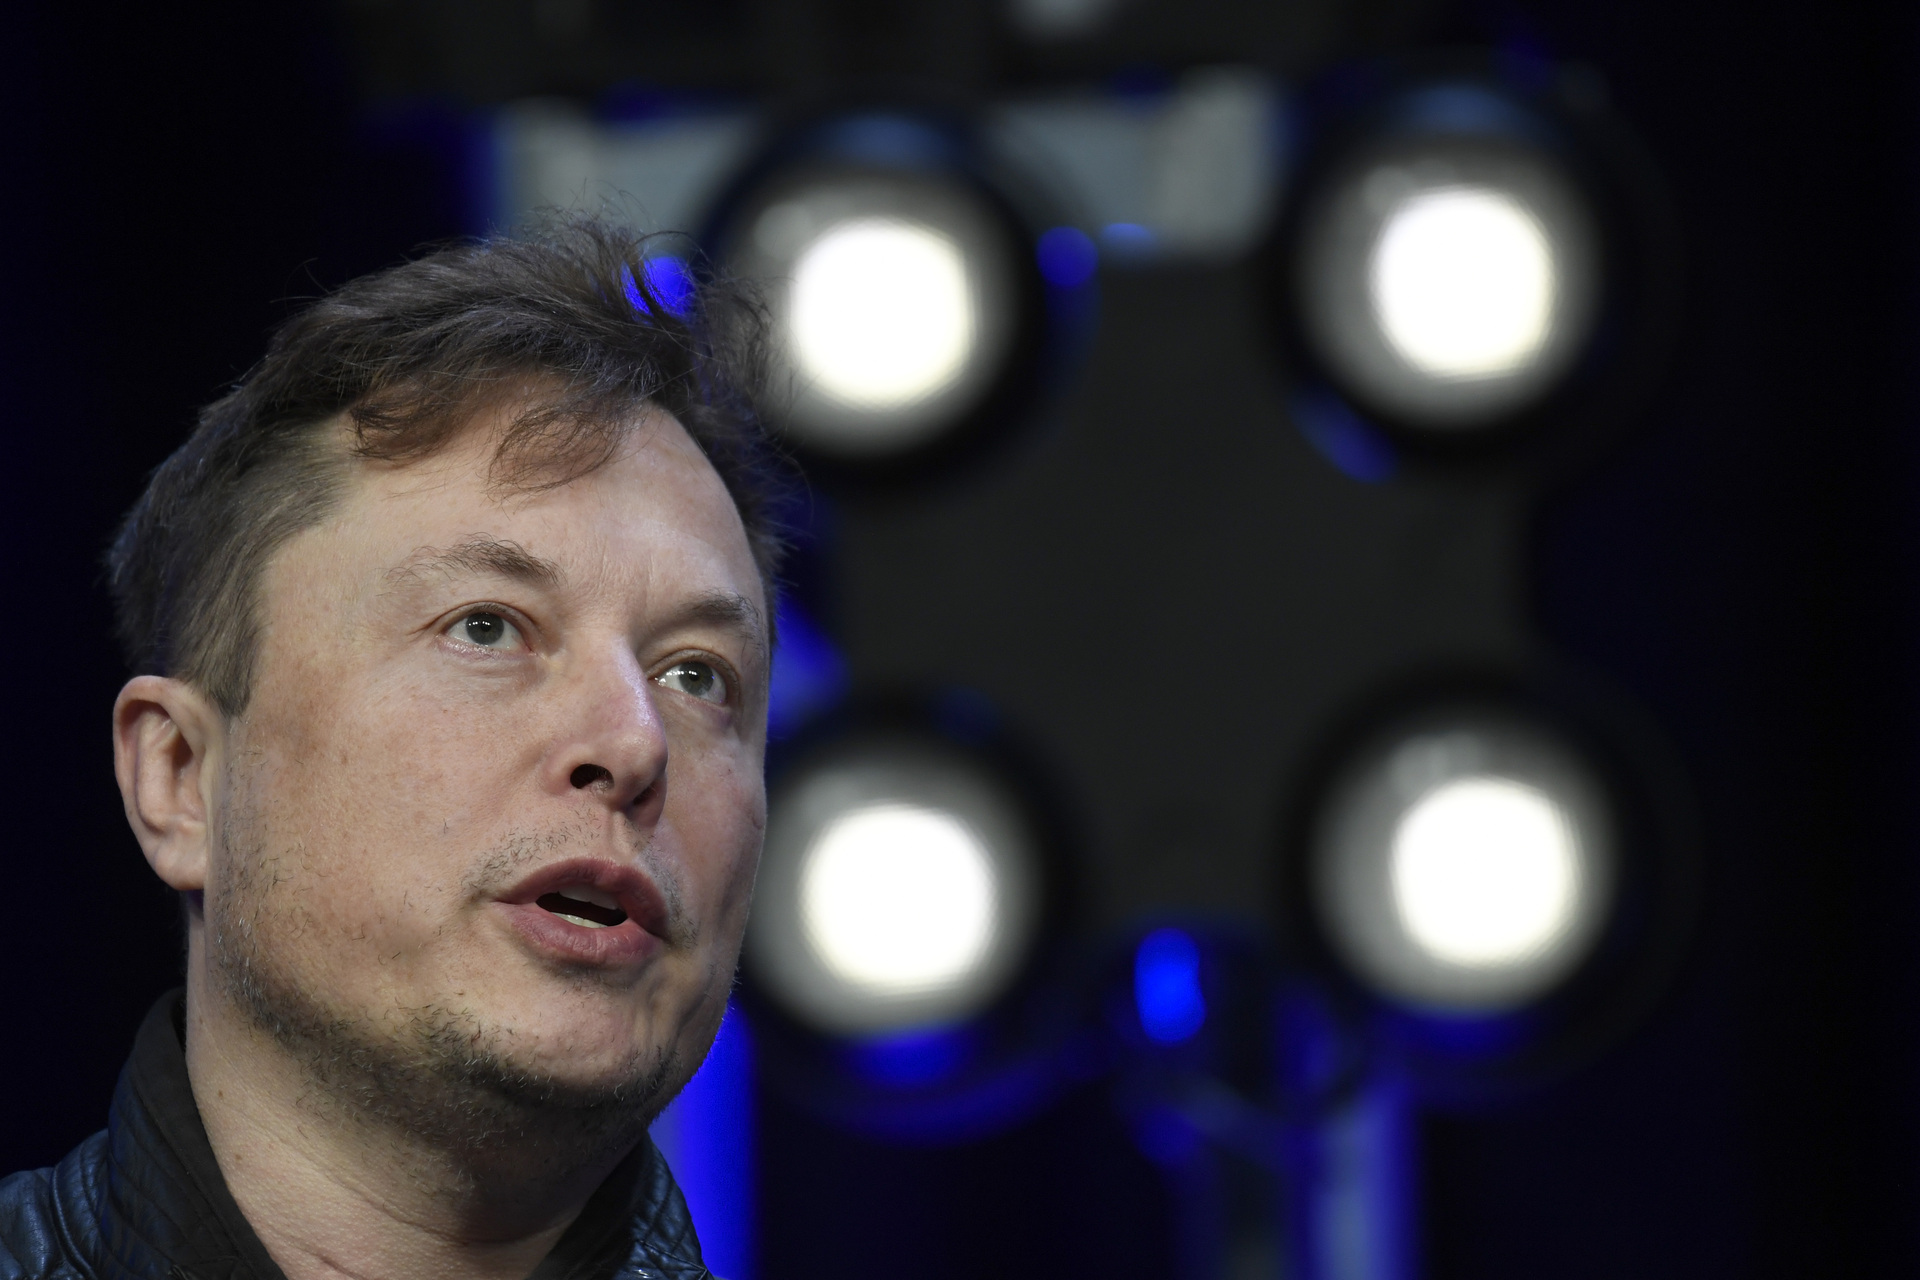 Aplazan juicio entre Elon Musk y Twitter. Noticias en tiempo real